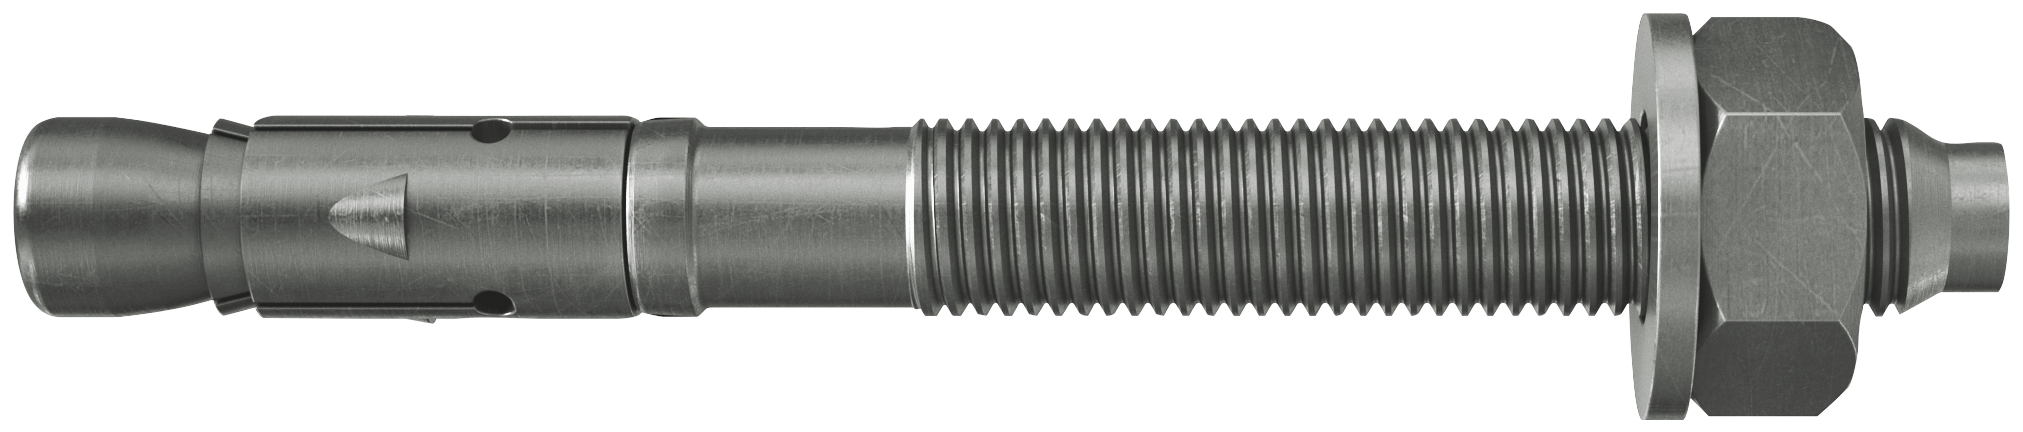 fischer Tassello acciaio FAZ II 10-10 A4 (50 Pz.) L'ancorante ad espansione ad alte prestazioni per carichi statici su calcestruzzo fessurato e per applicazioni sismiche. Versione in acciaio inossidabile con classe di resistenza alla corrosione CRC III. fie1484